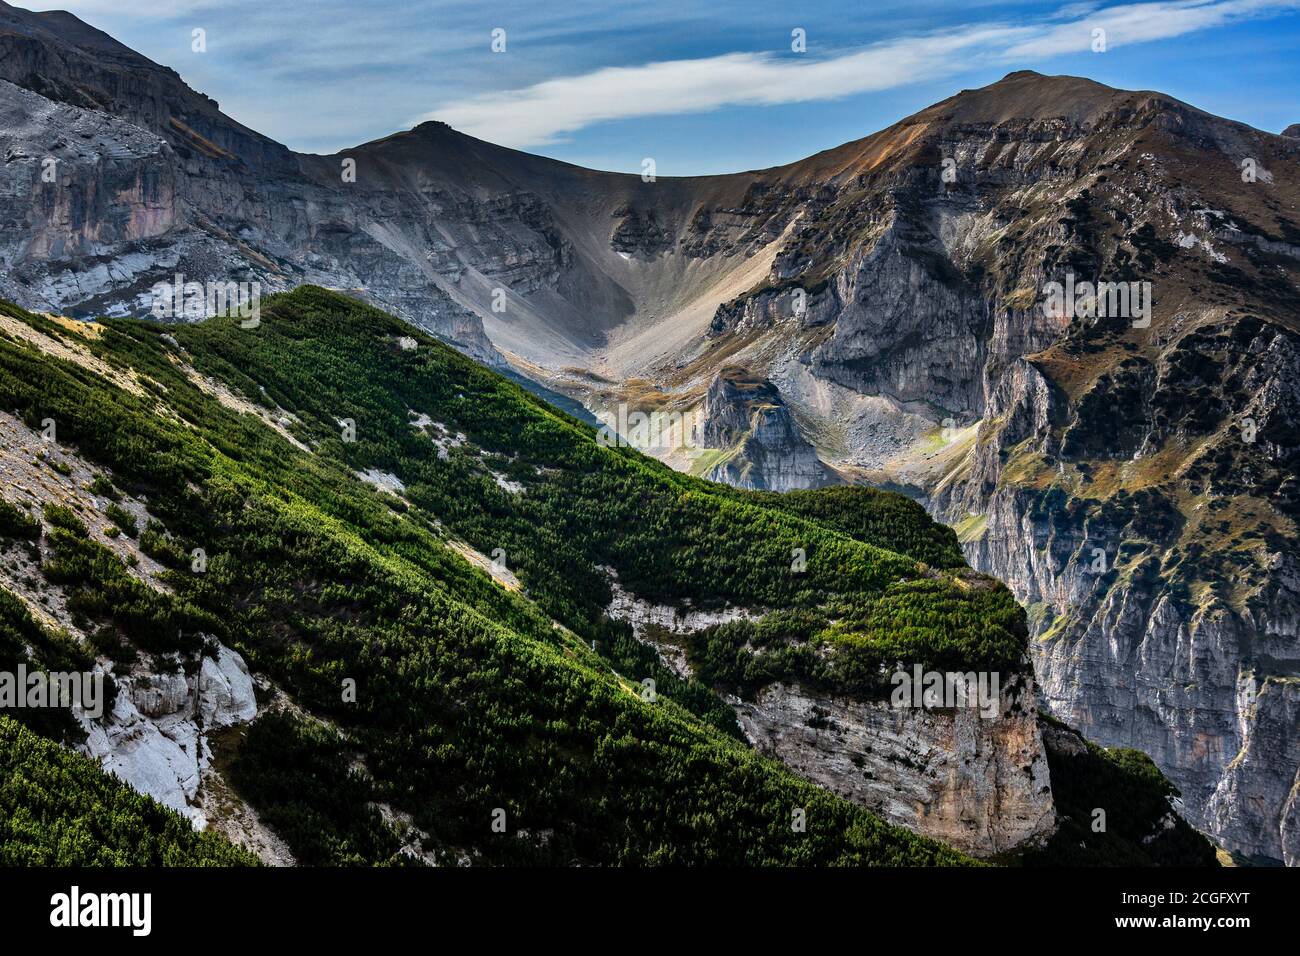 Pins de montagne au pied du mont Focalaone, parc national de Majella. Abruzzes, Italie, Europe Banque D'Images